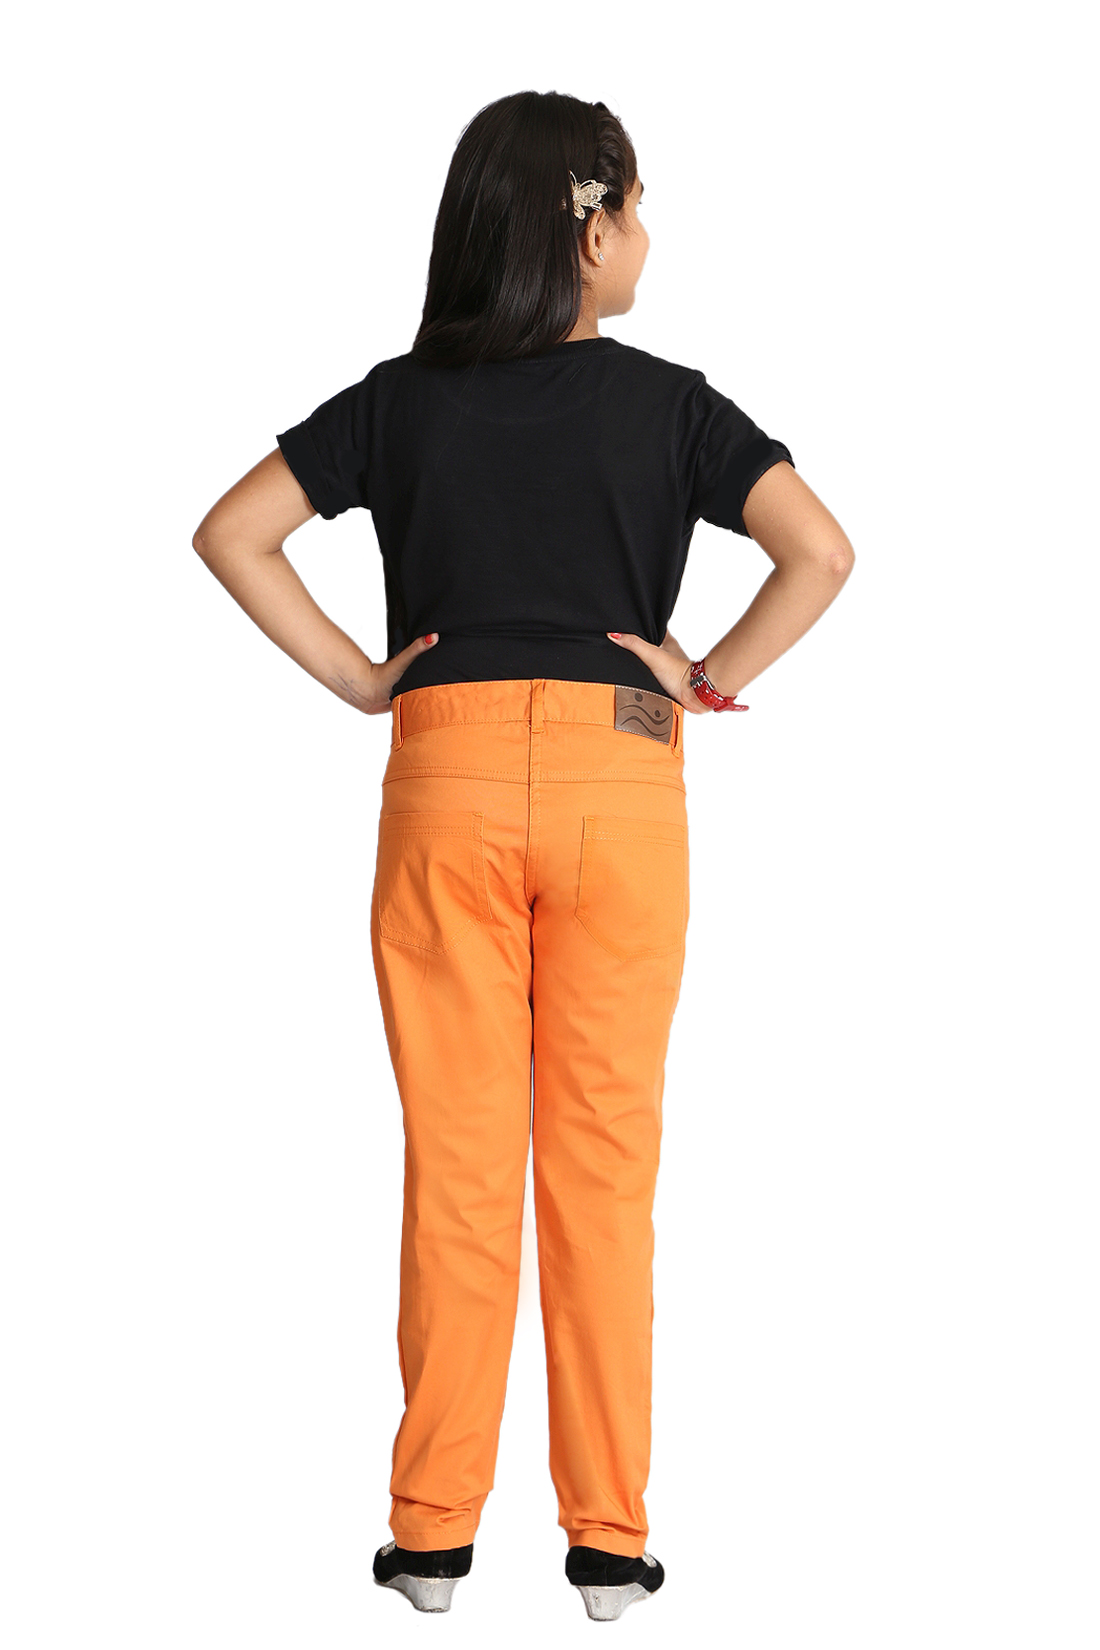 Niyo Girls Regular Fit Women Dark Blue Trousers - Buy Niyo Girls Regular  Fit Women Dark Blue Trousers Online at Best Prices in India | Flipkart.com